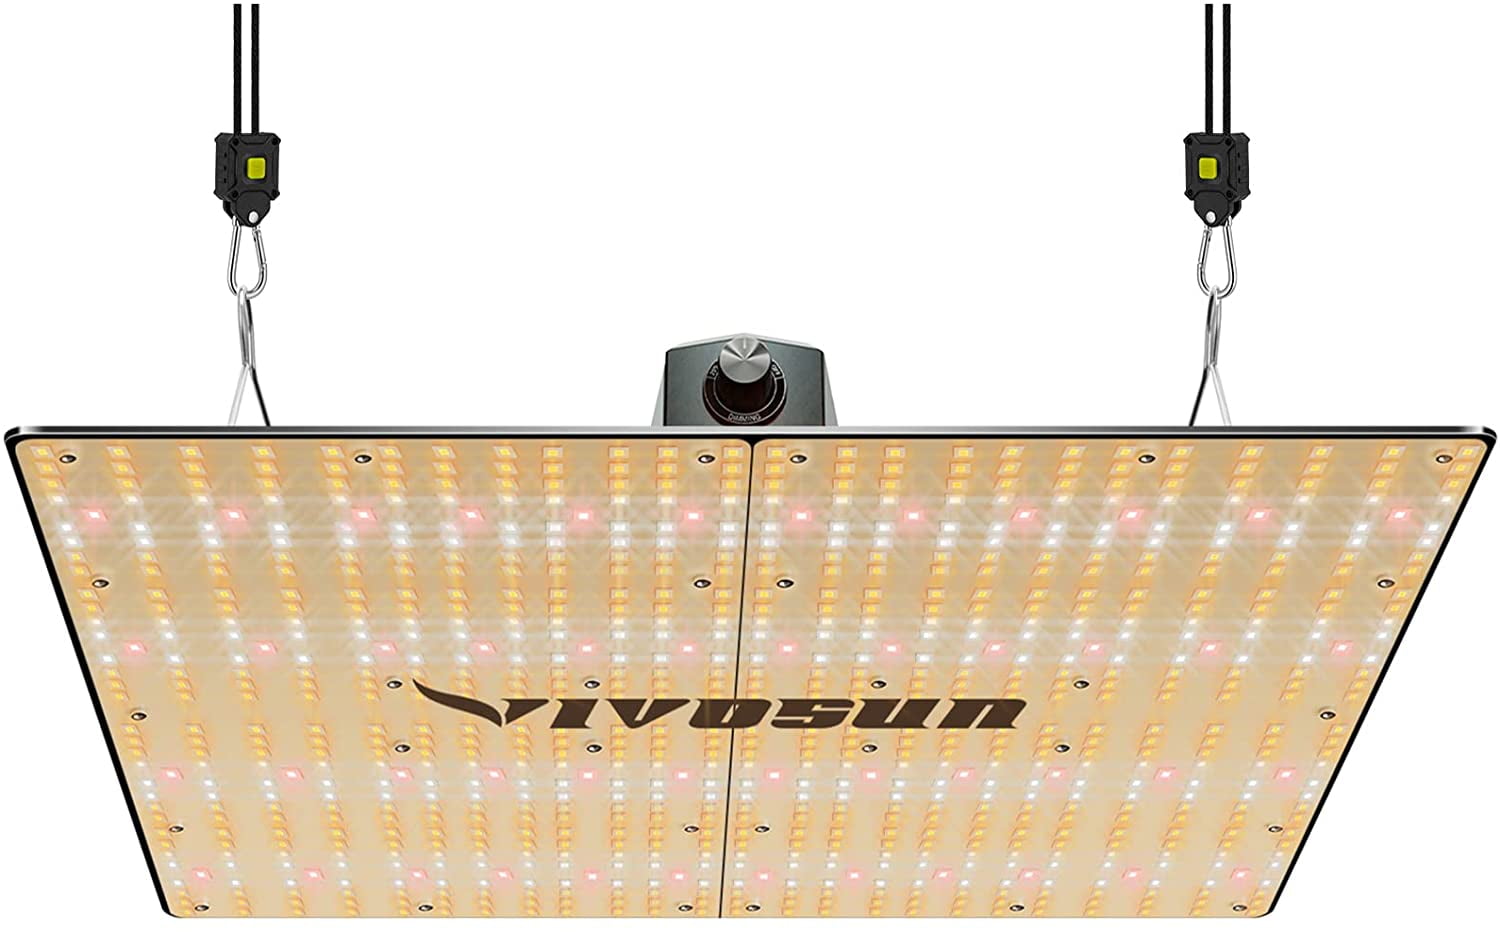 Details about   4000W LED Grow Light Full Spectrum Hydro For Veg Flower   Plant Lamp Panel USA B 